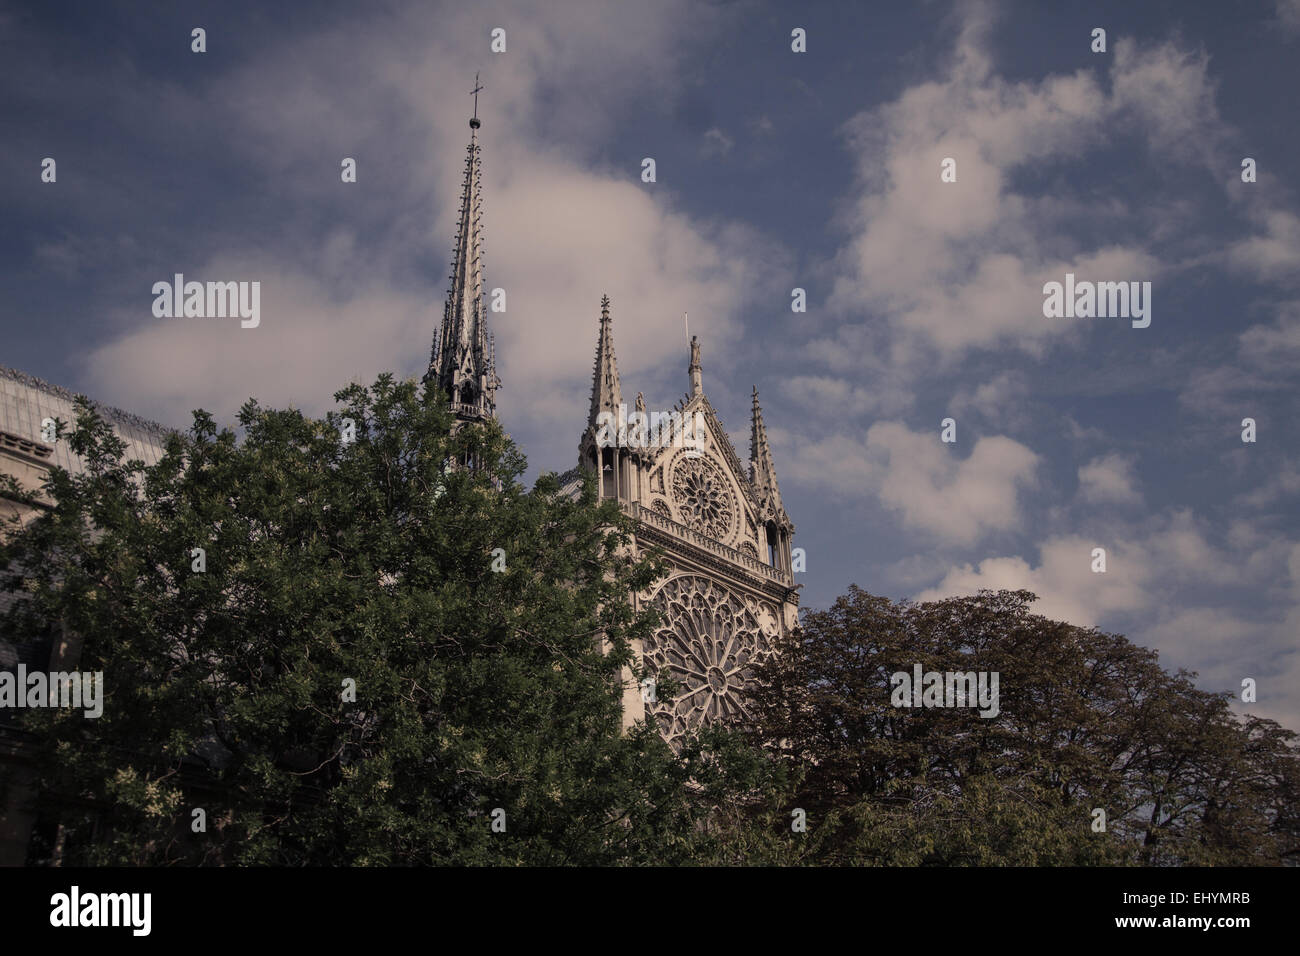 La Tour Notre Dame Vue de détail, Paris, France Banque D'Images